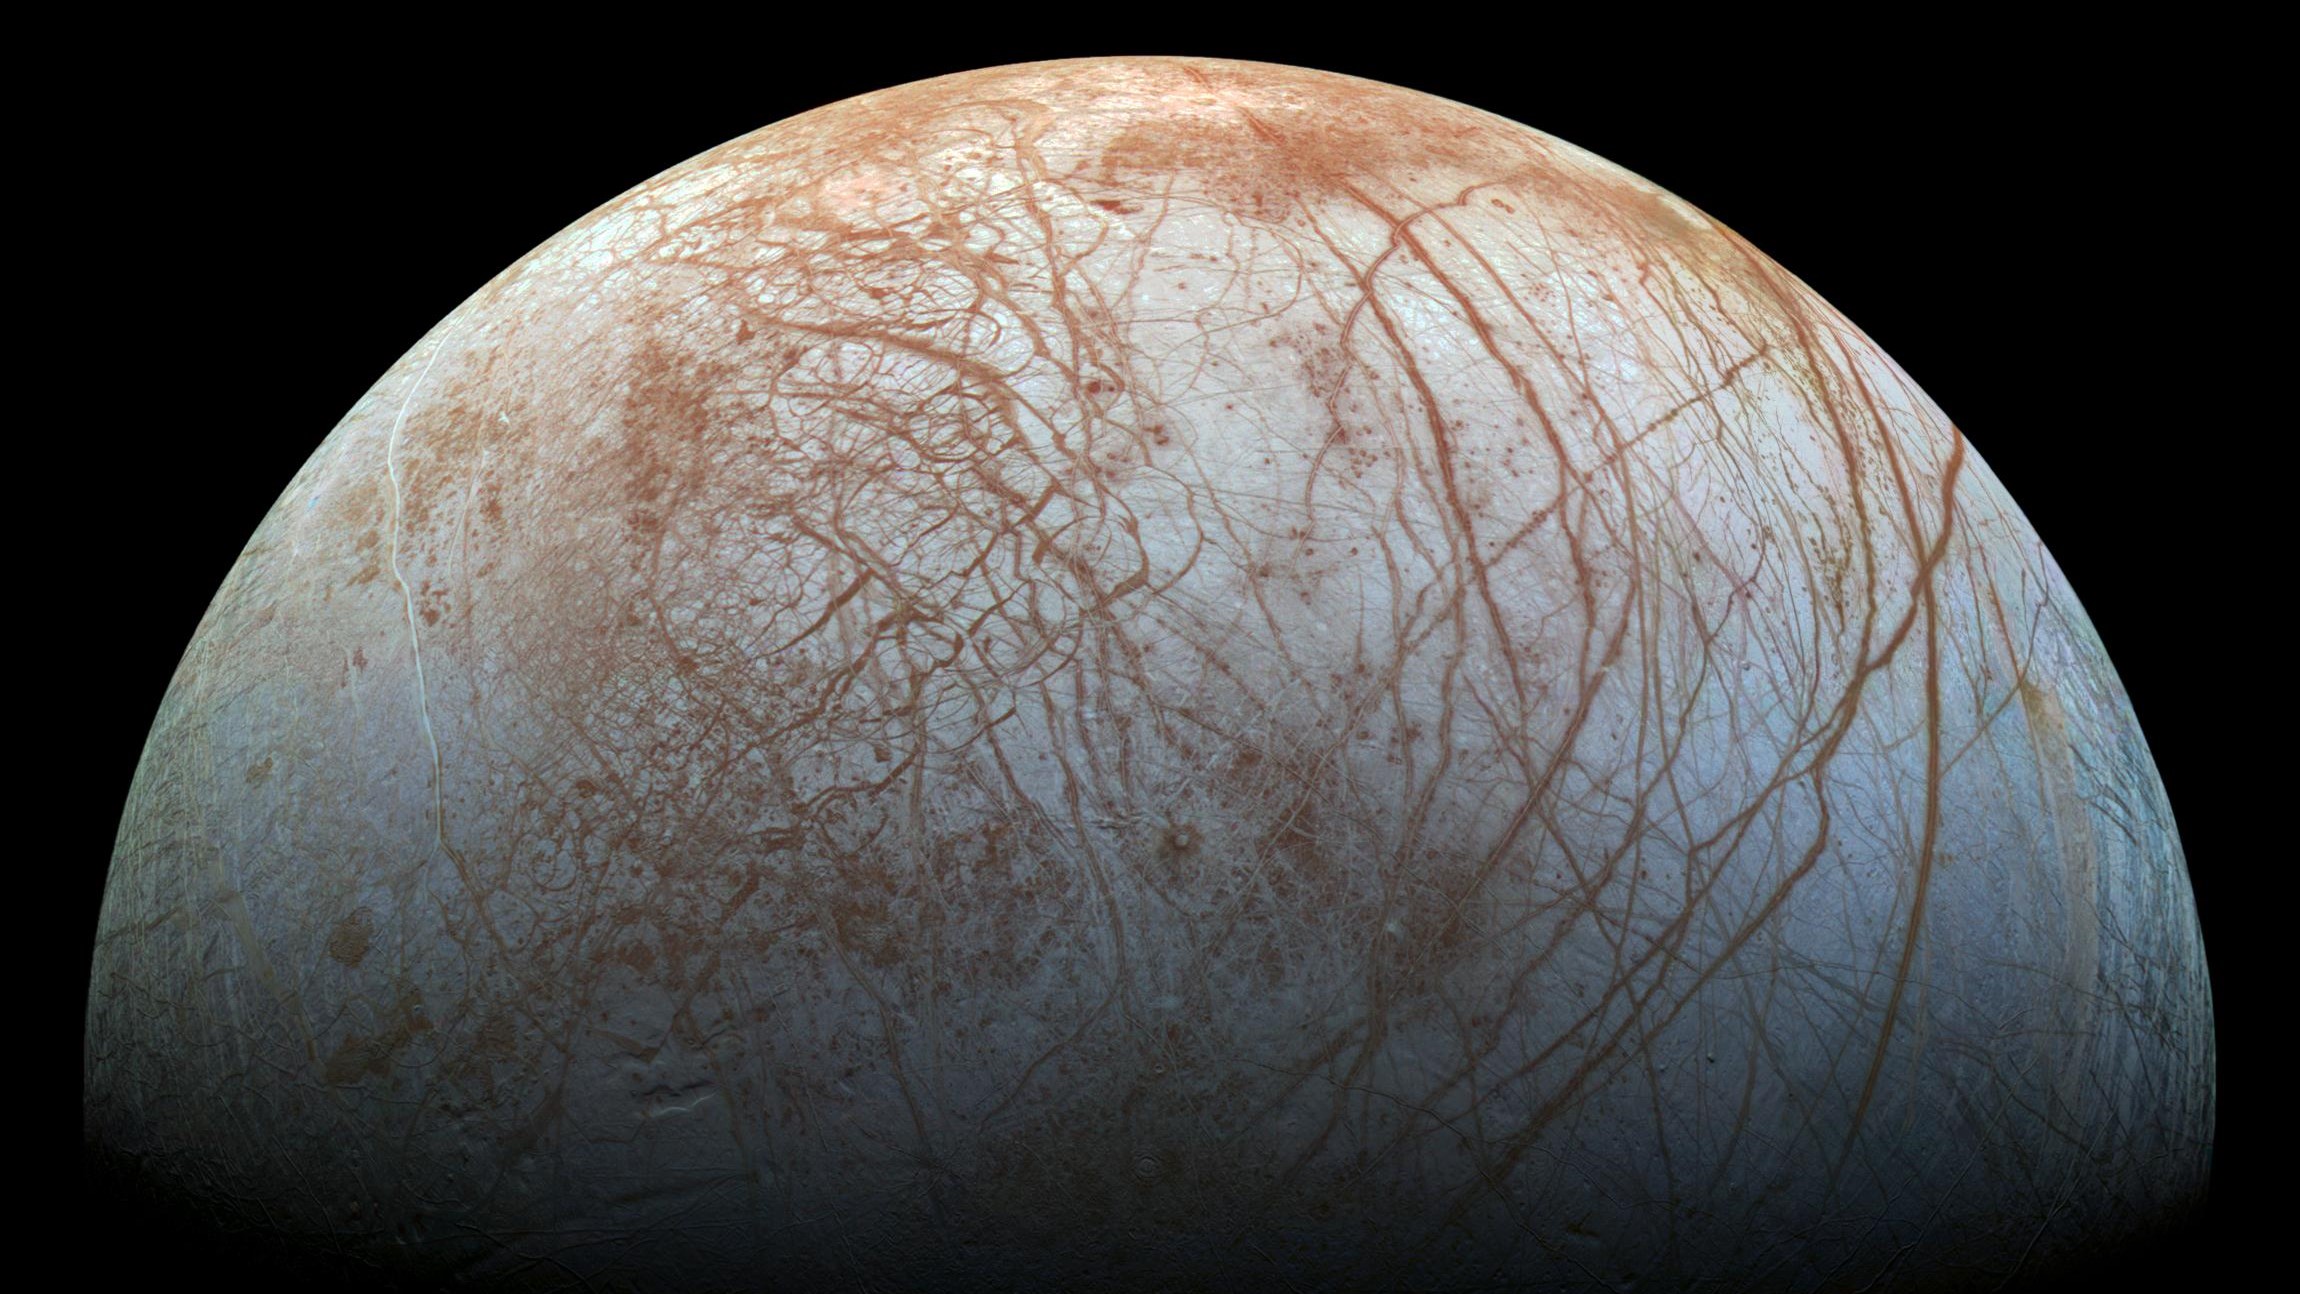 Europa, la lune de Jupiter, est la prochaine destination du vaisseau spatial Juno.